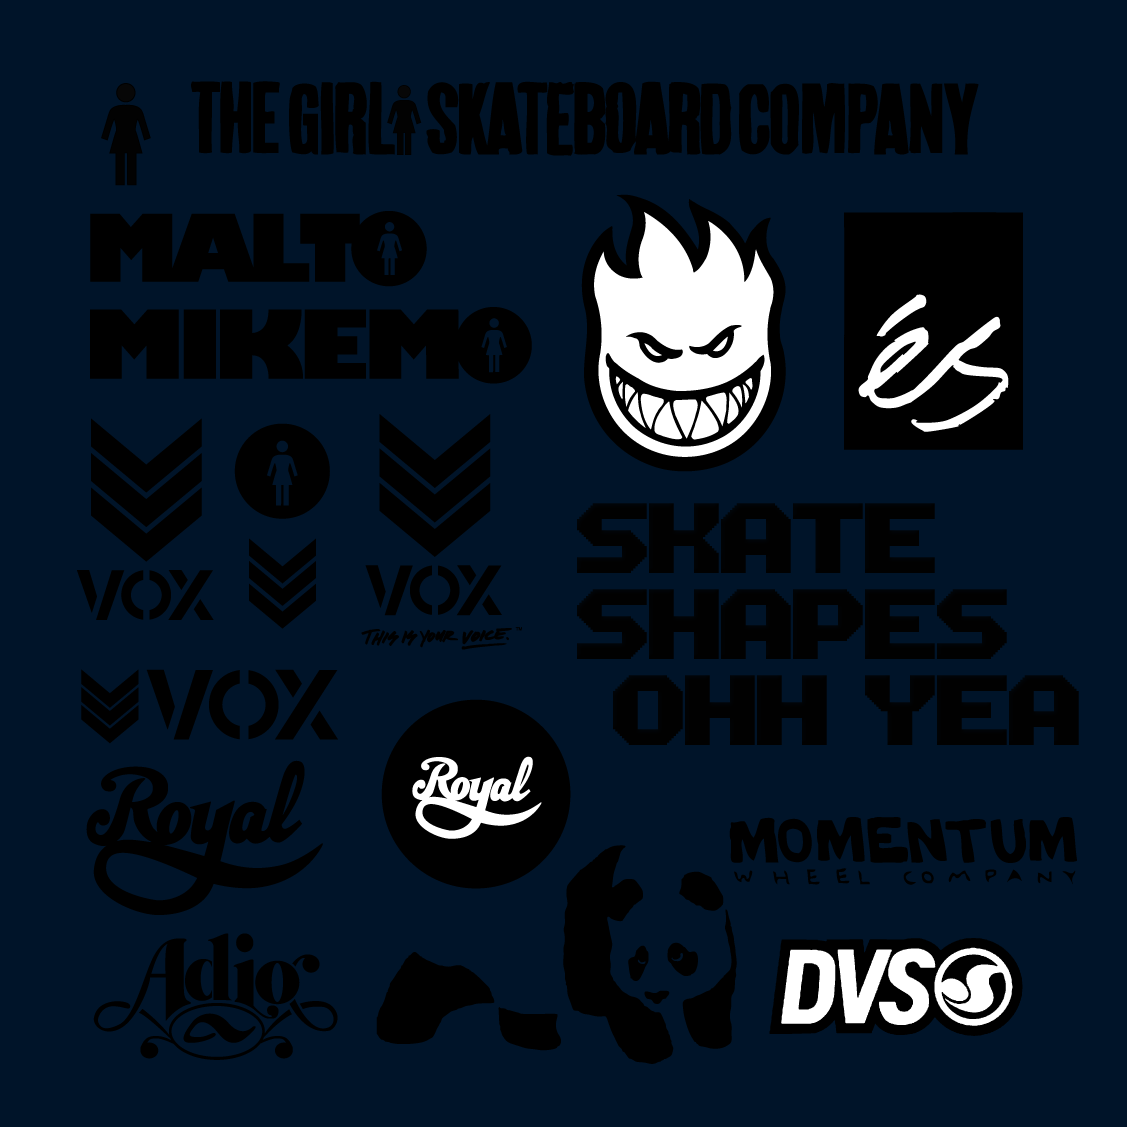 Skateboarding Logos Wallpapers My favorite skate logos by